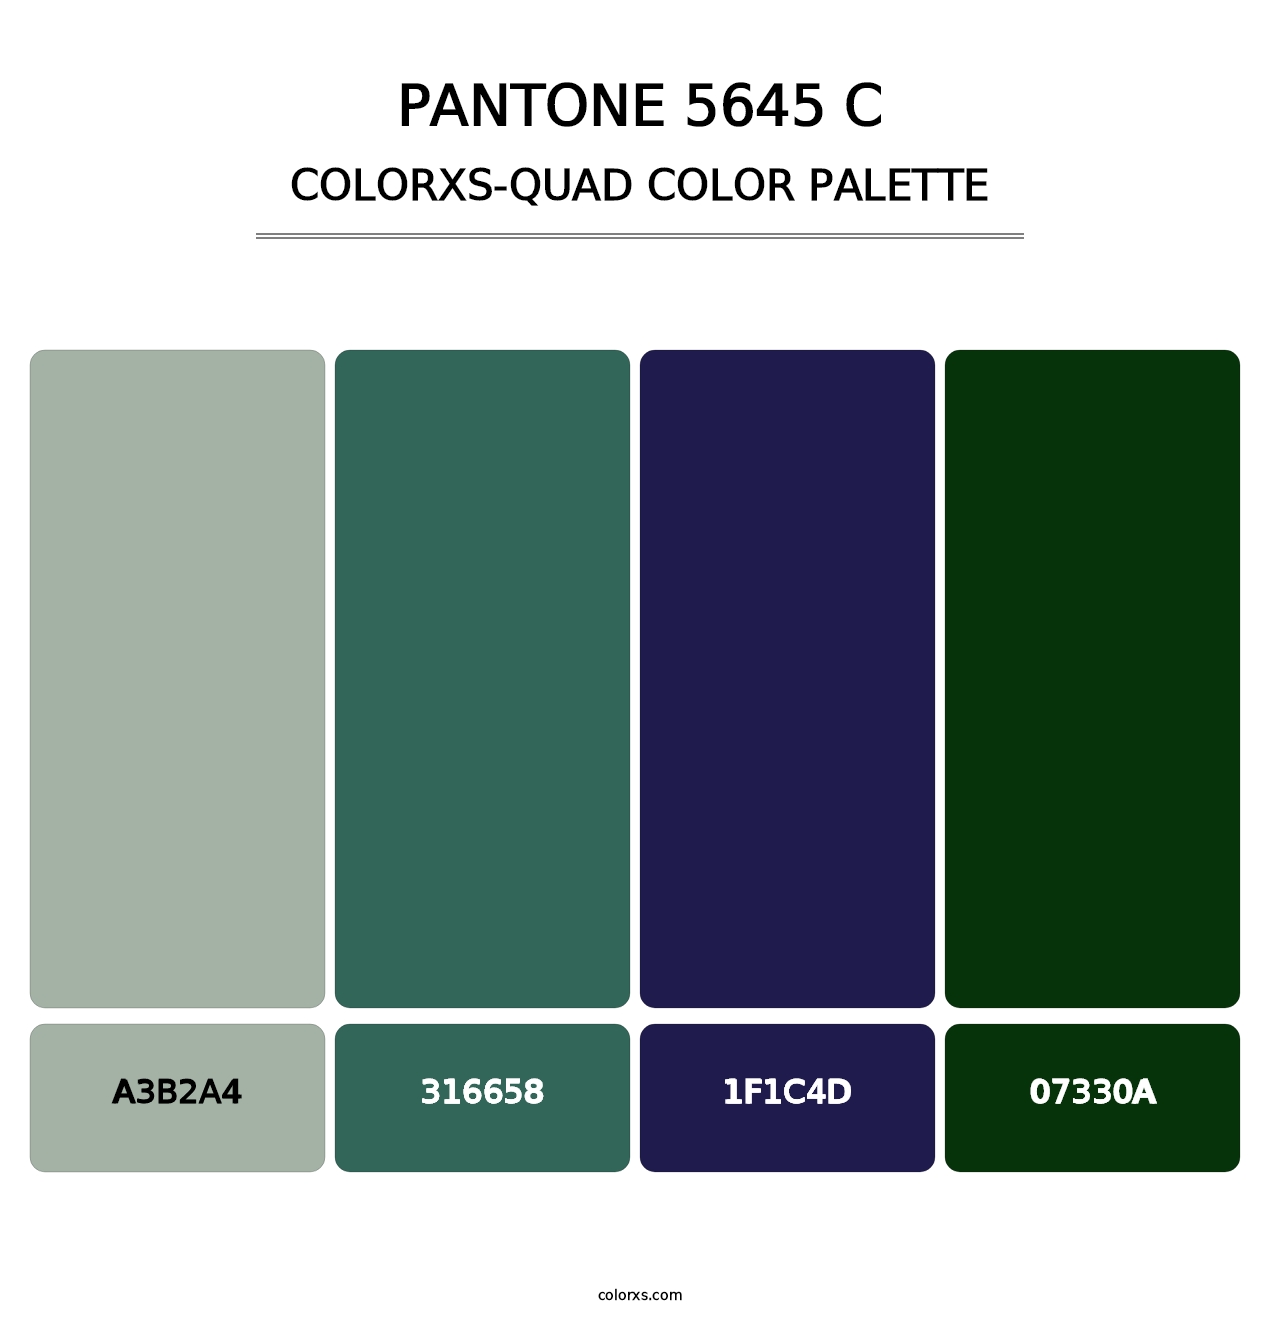 PANTONE 5645 C - Colorxs Quad Palette